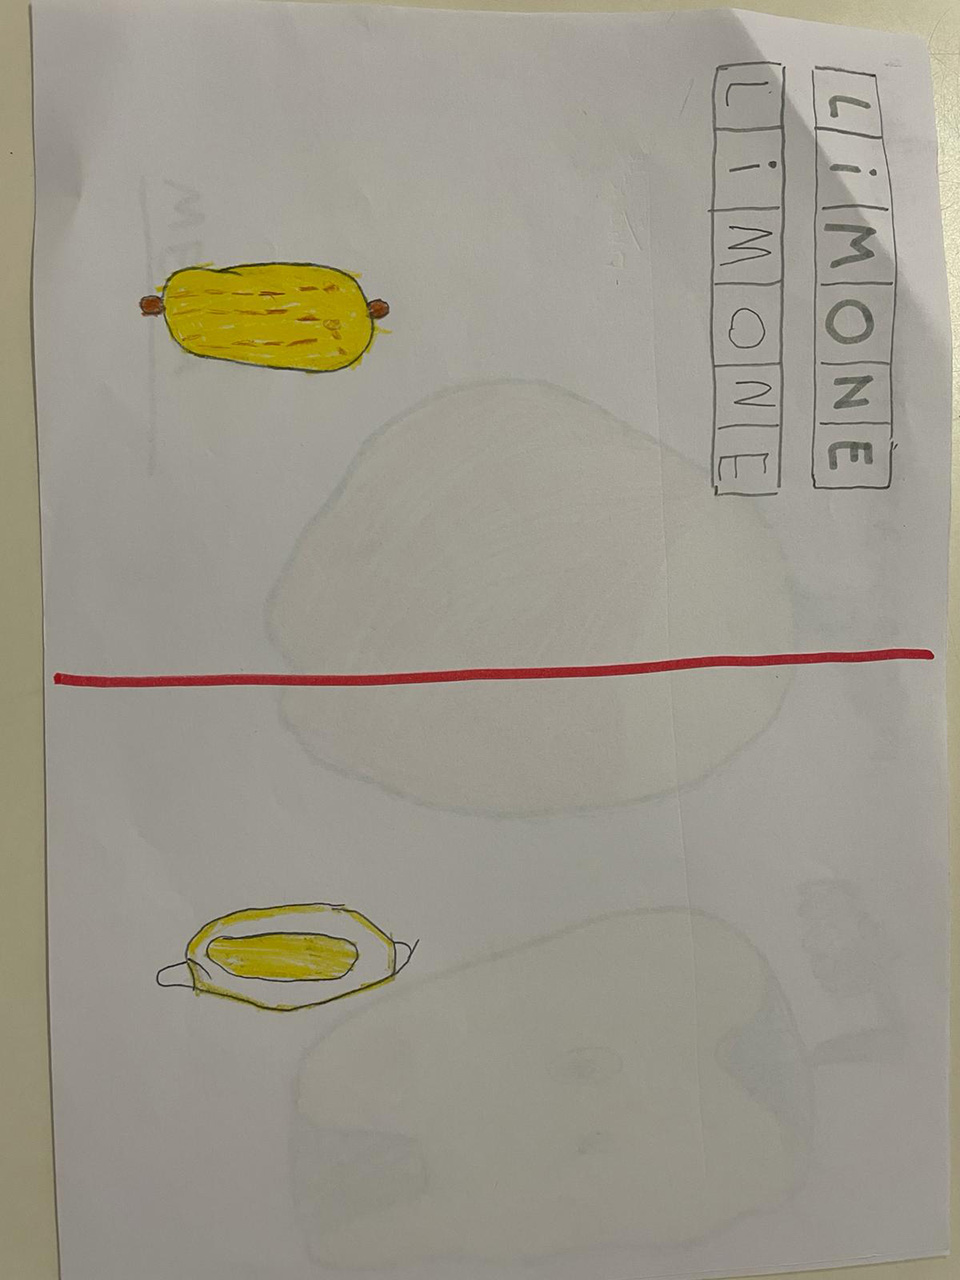 disegno creato da bambino di un limone